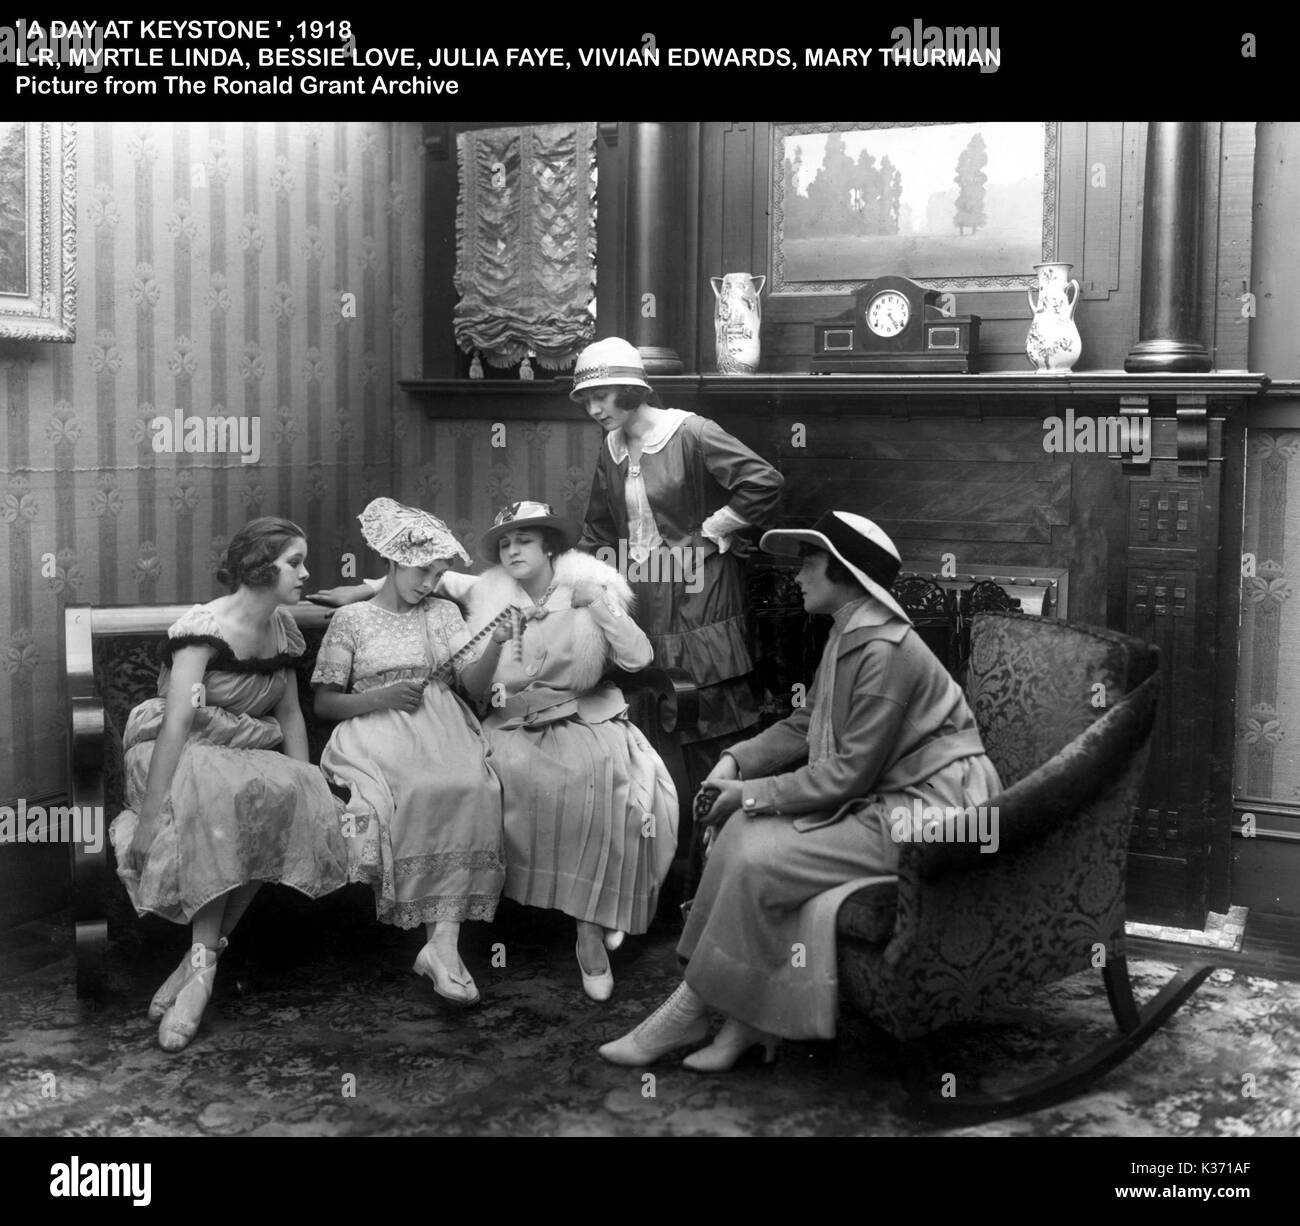 Un giorno a Keystone, 1918 L-R, mirto LINDA, BESSIE AMORE, JULIA FAYE, VIVIAN EDWARDS, MARIA THURMAN la manipolazione della pellicola pellicola di nitrato Foto Stock